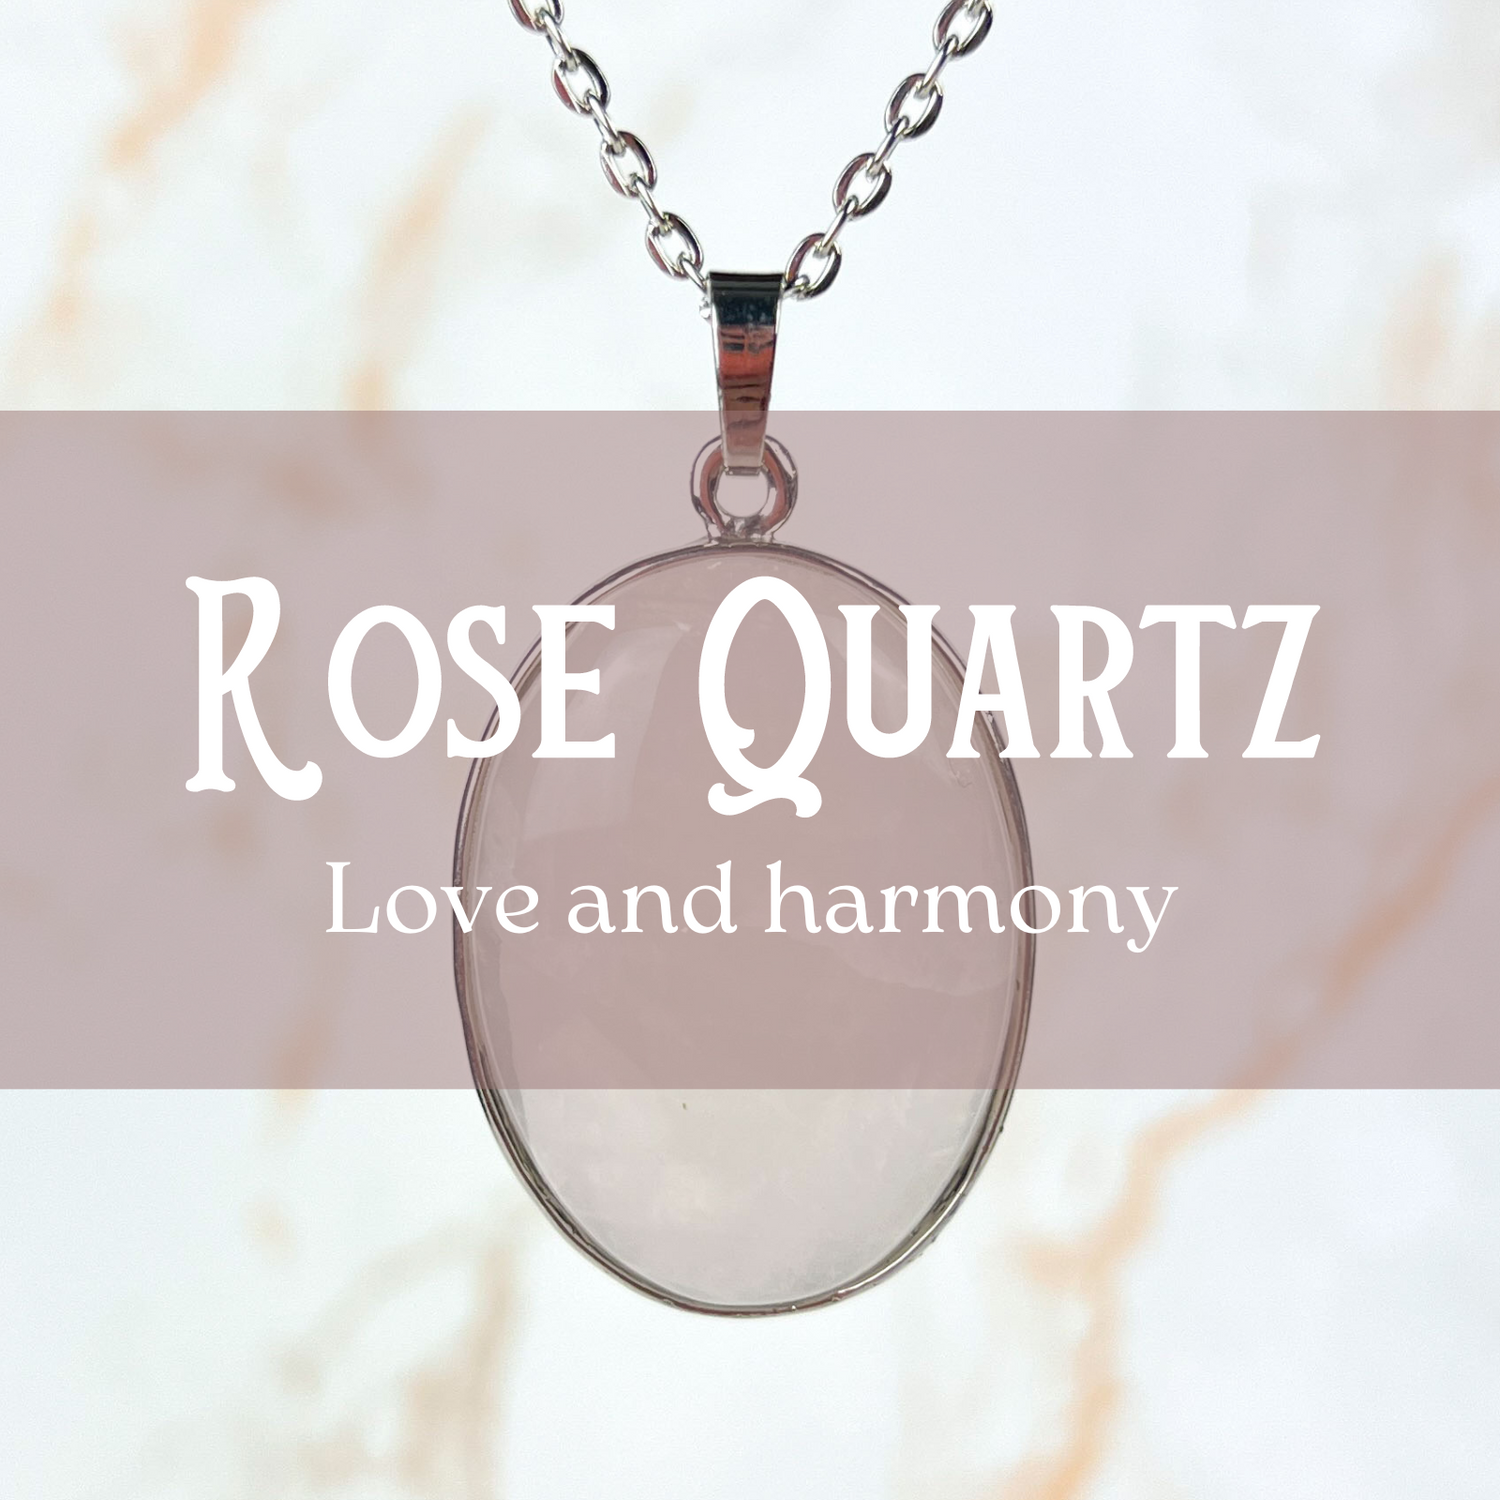 Rose quartz jewelry